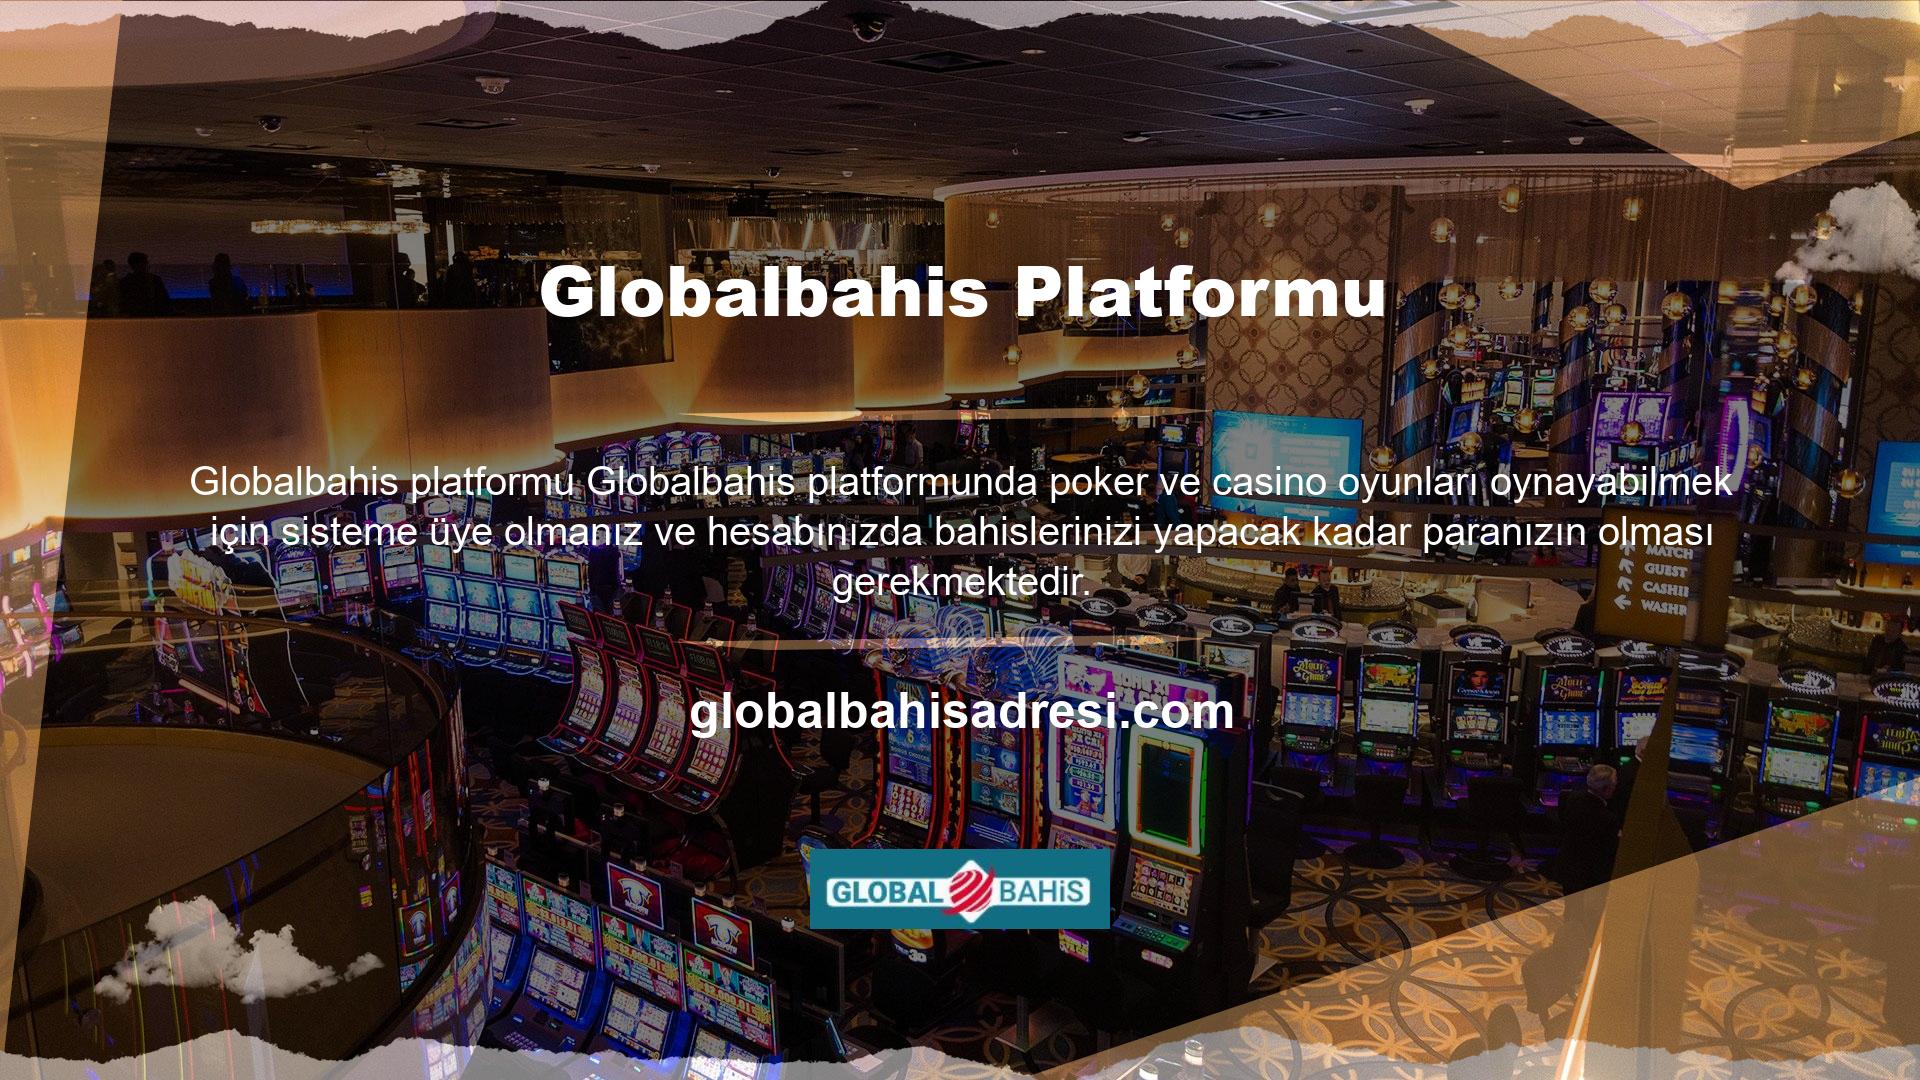 Kayıt olmak için Globalbahis platformunun kayıt bölümüne giriş yapıp üyelik formunu doldurarak hesap açabilirsiniz